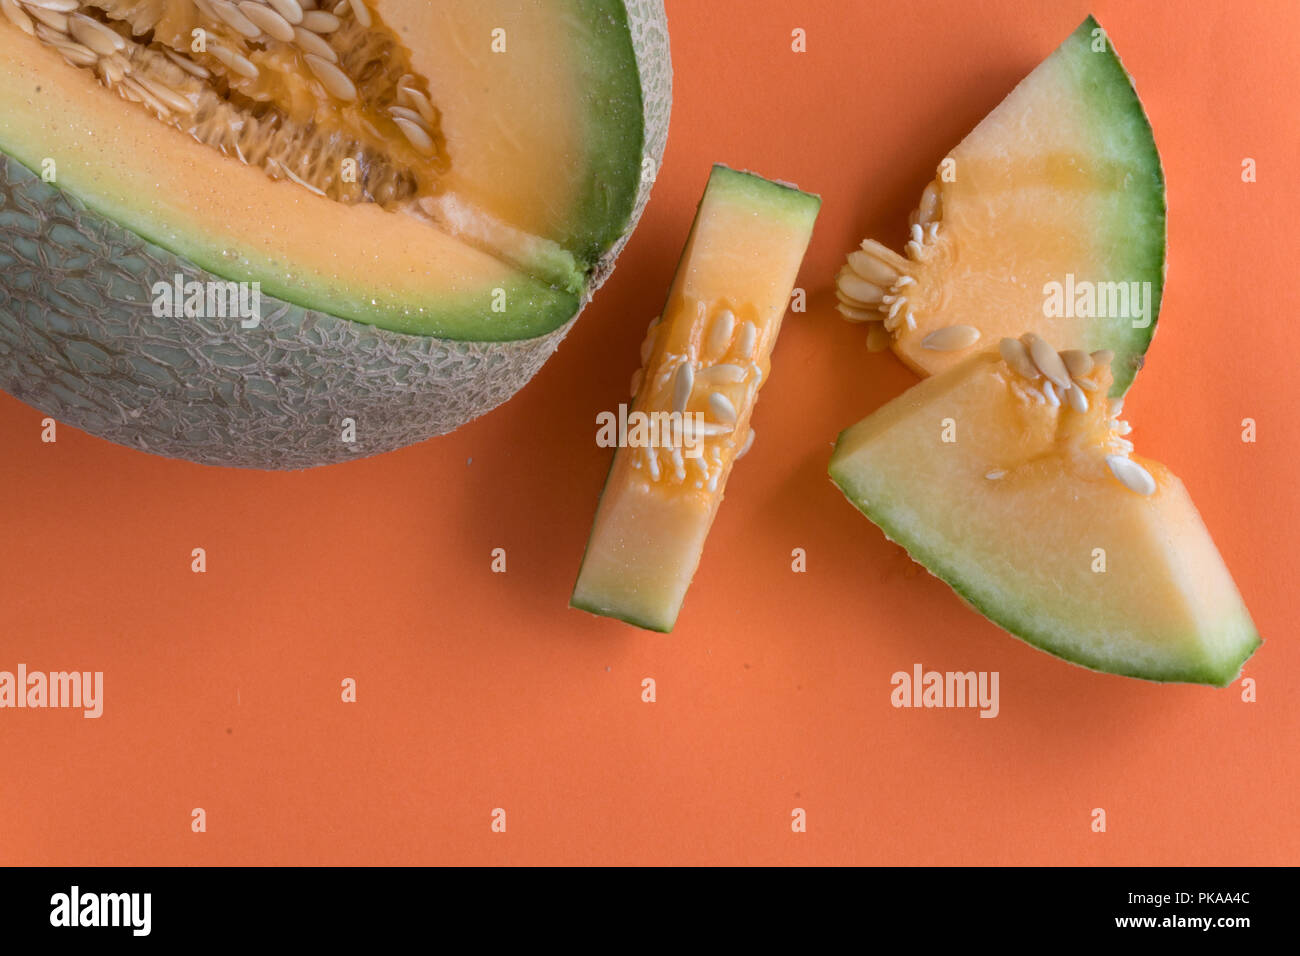 Tranches de melon sur fond orange. Doux, juteux, fruits collation idéale pour suivre un régime sain. Banque D'Images